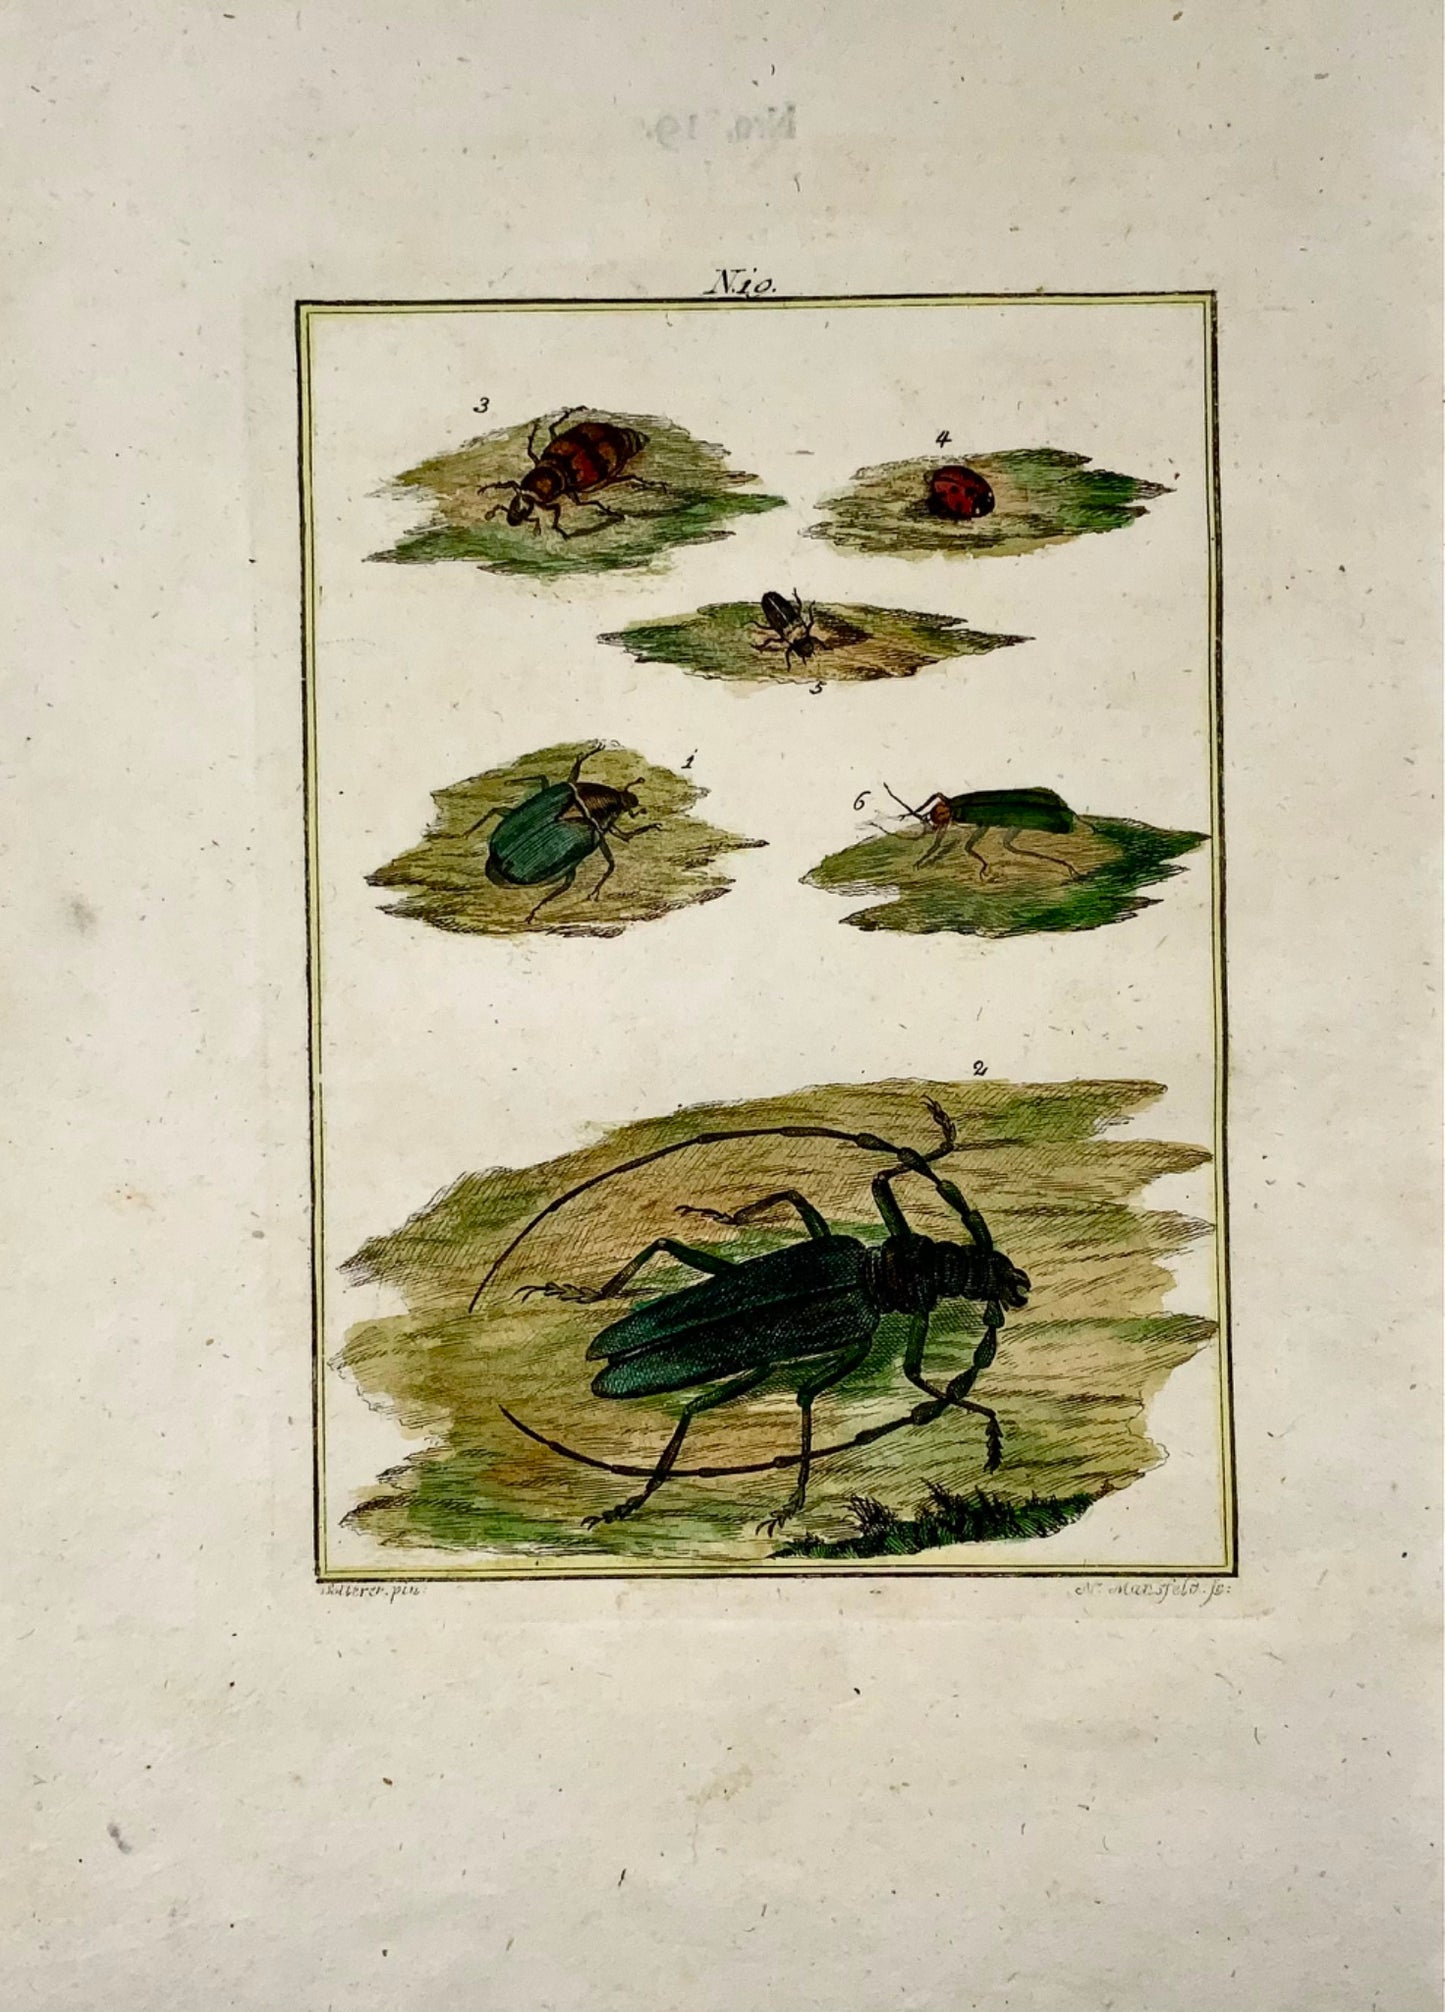 1790 Coléoptères, insectes, Joh. Gravure colorée à la main de Sollerer